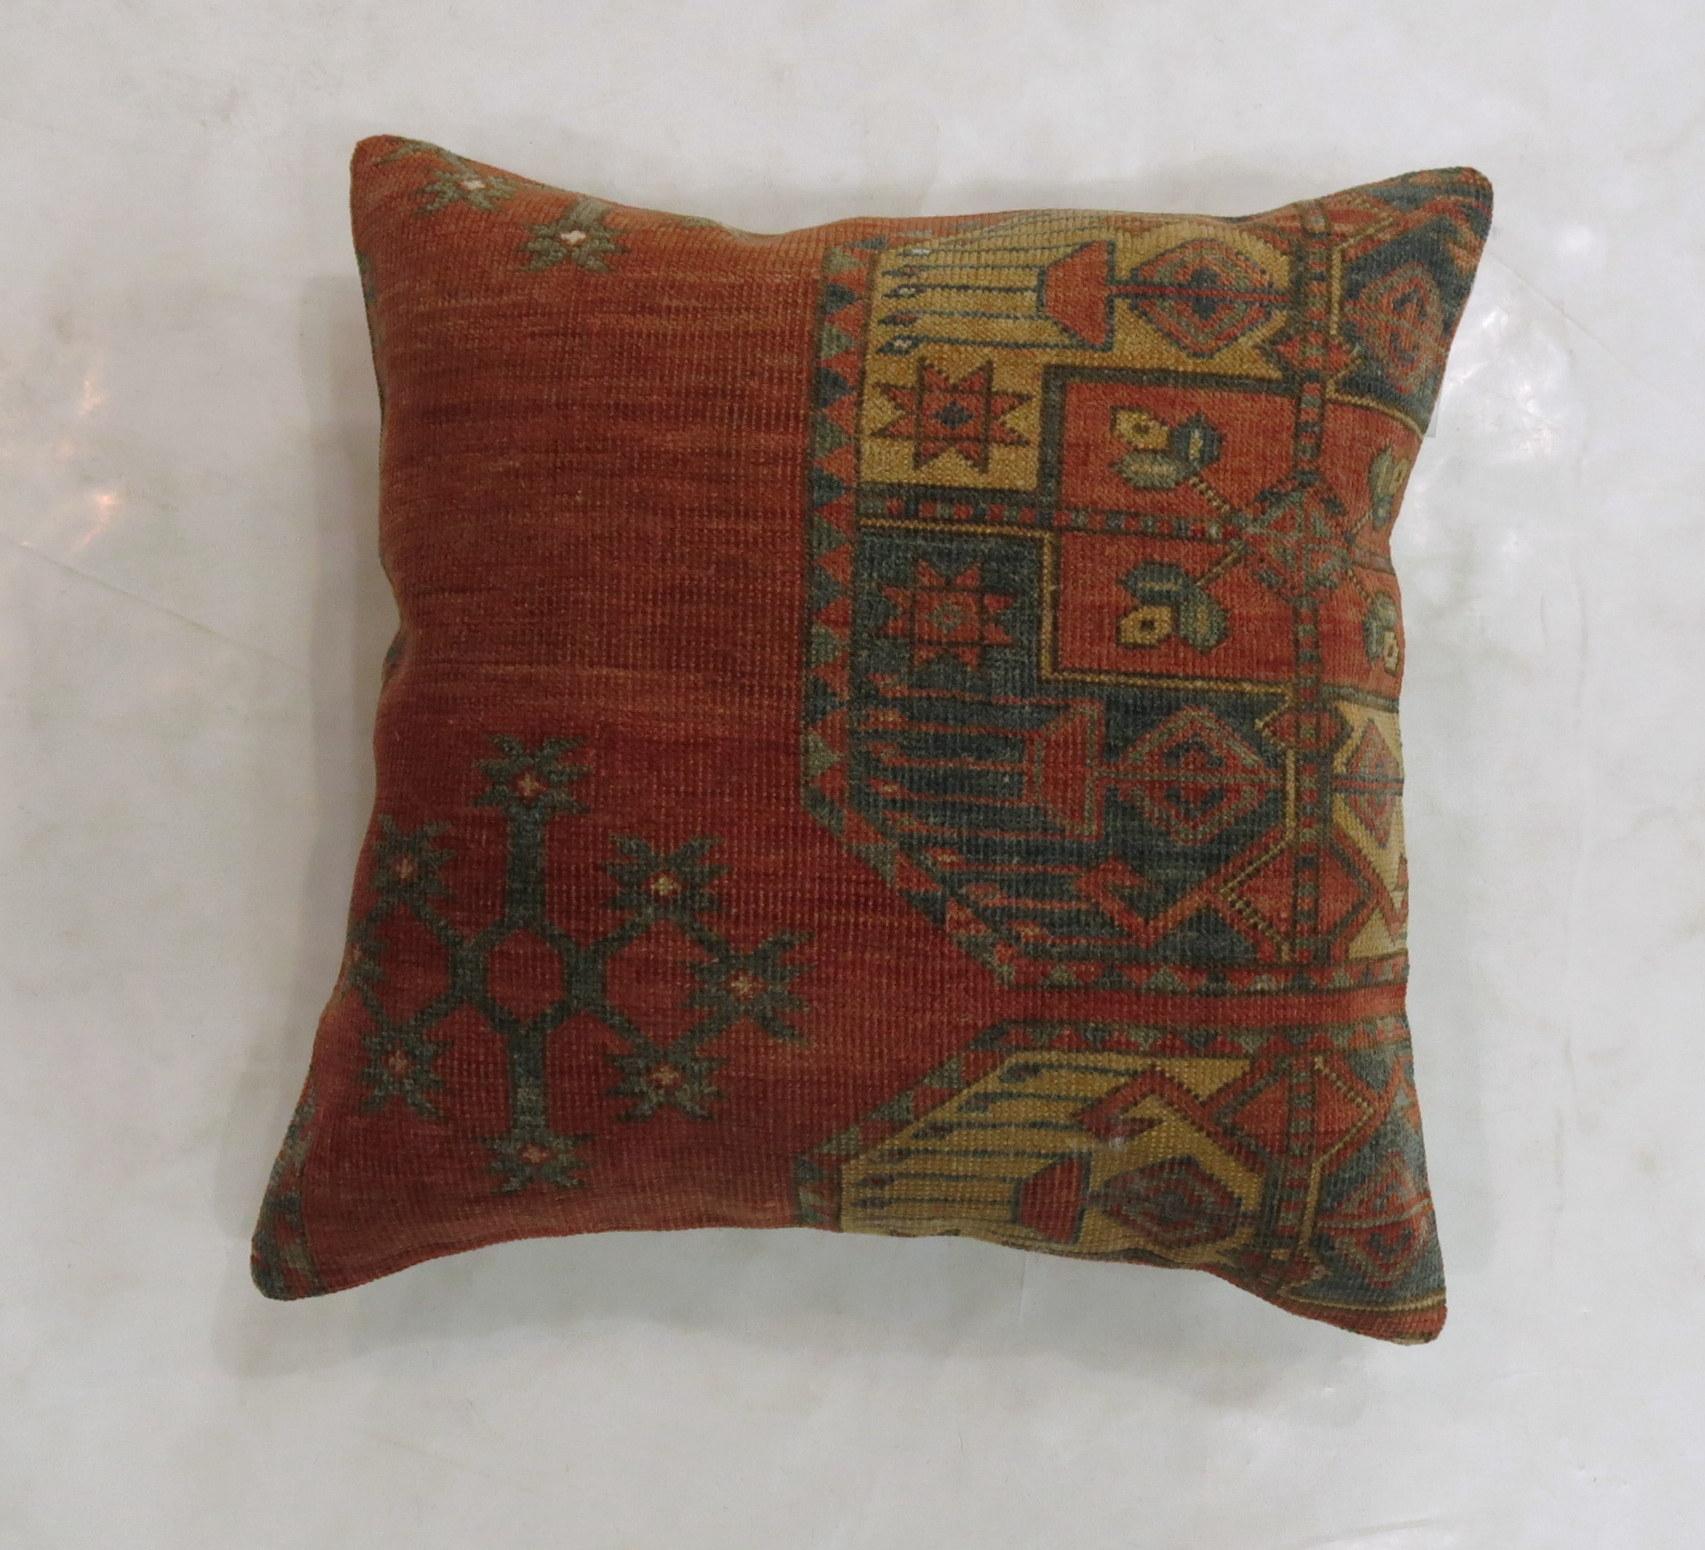 Kissen aus einem antiken Ersari-Teppich aus dem 19. Jahrhundert mit Baumwollrücken und Reißverschluss.

Maße: 20'' x 20''.